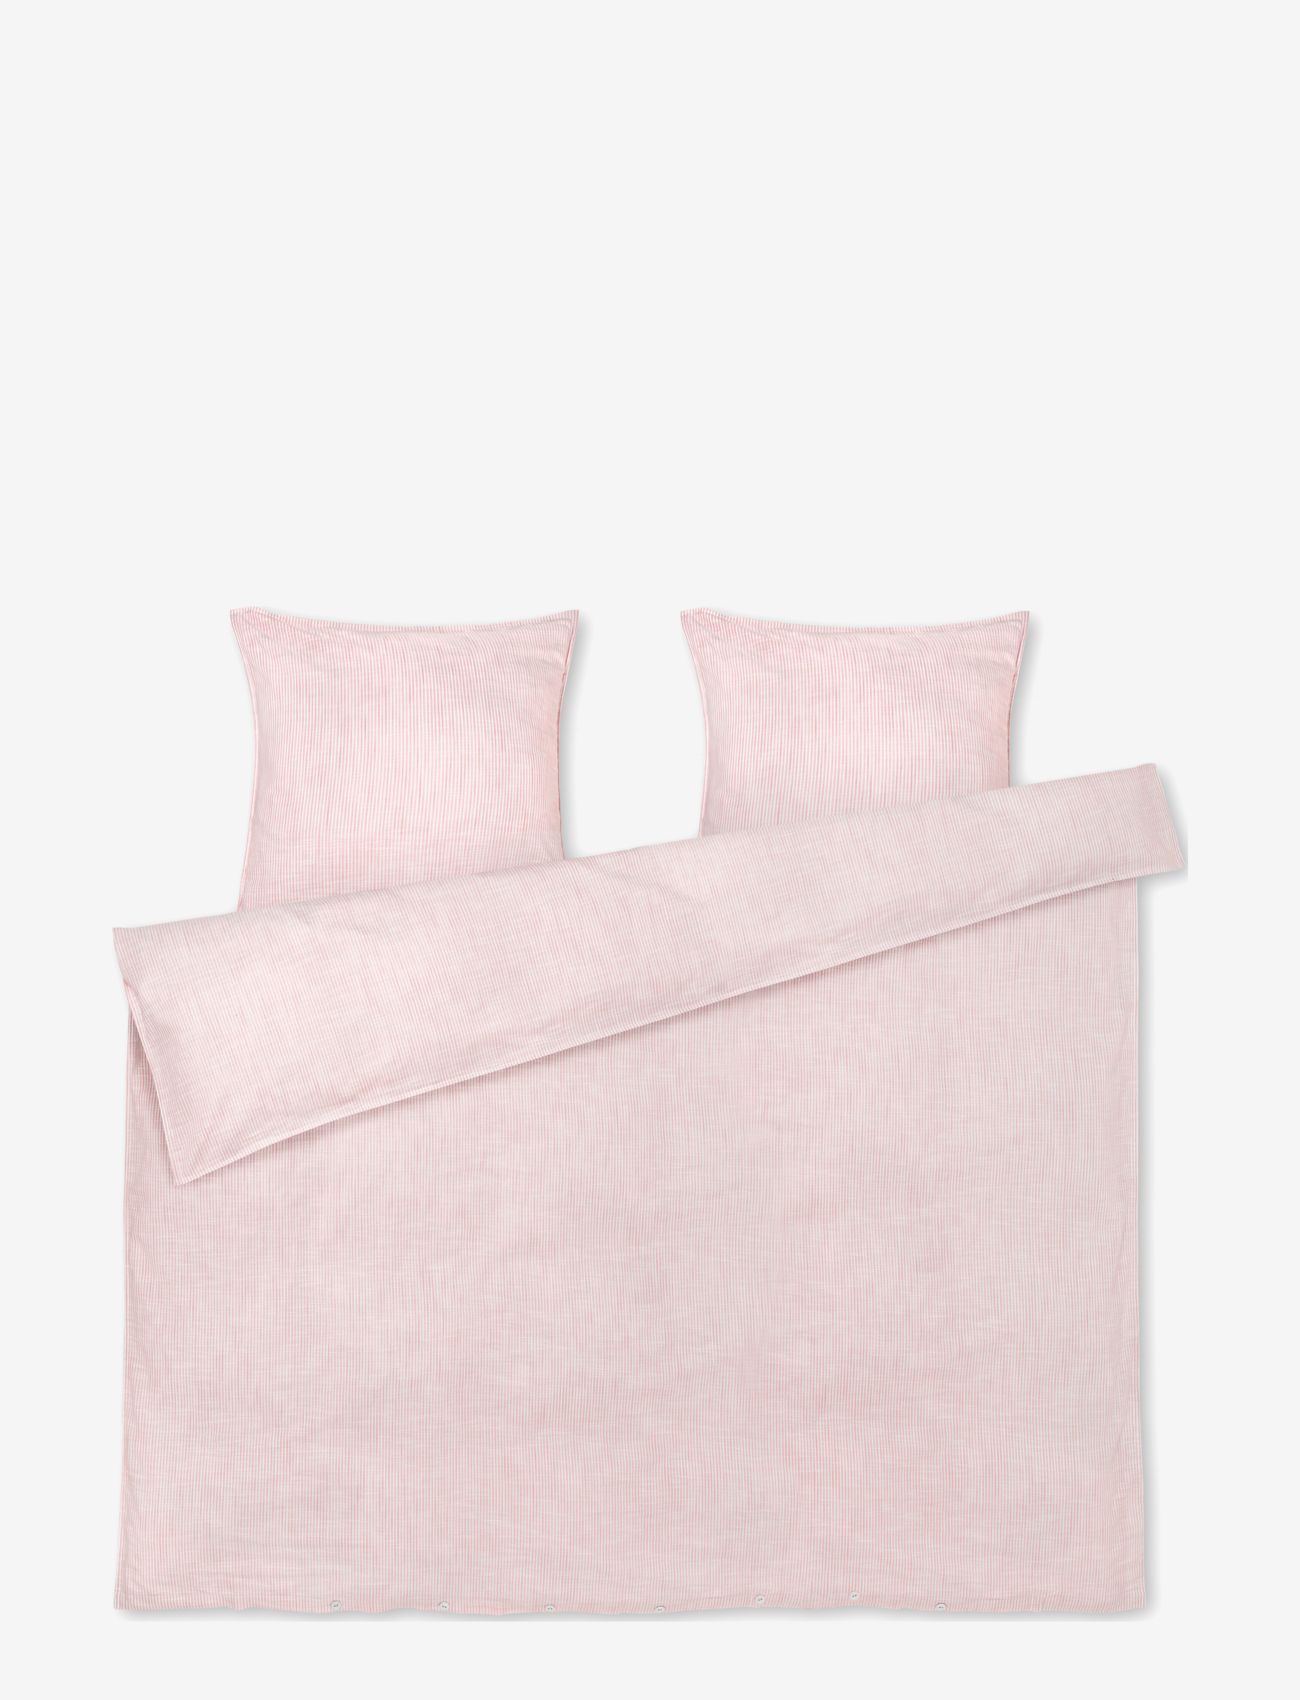 Juna - Monochrome Lines Bed linen 200x220 cm DK - bedsets - rose/white - 0